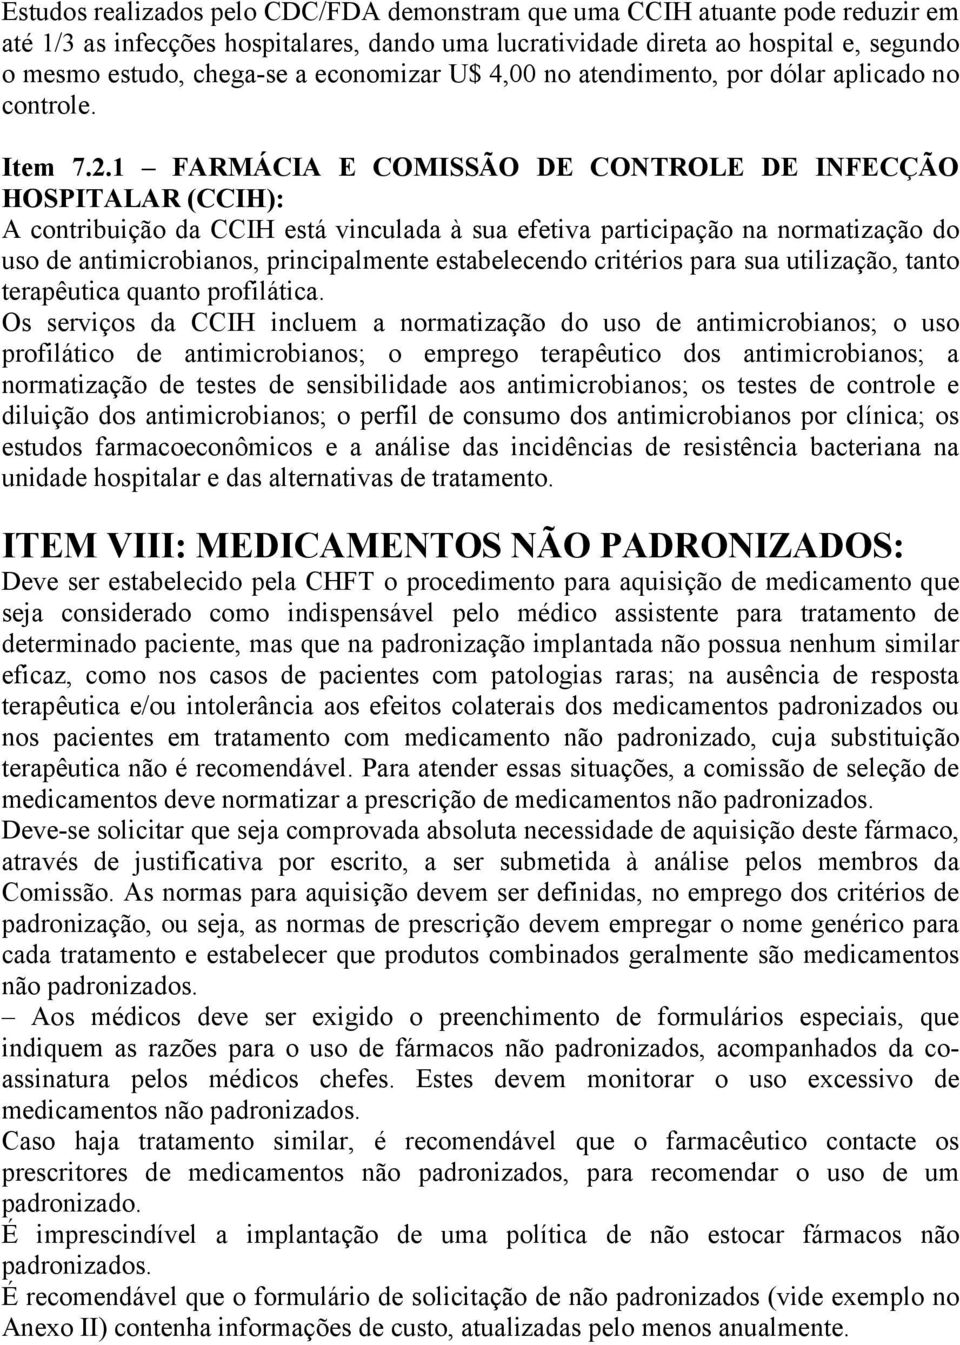 1 FARMÁCIA E COMISSÃO DE CONTROLE DE INFECÇÃO HOSPITALAR (CCIH): A contribuição da CCIH está vinculada à sua efetiva participação na normatização do uso de antimicrobianos, principalmente